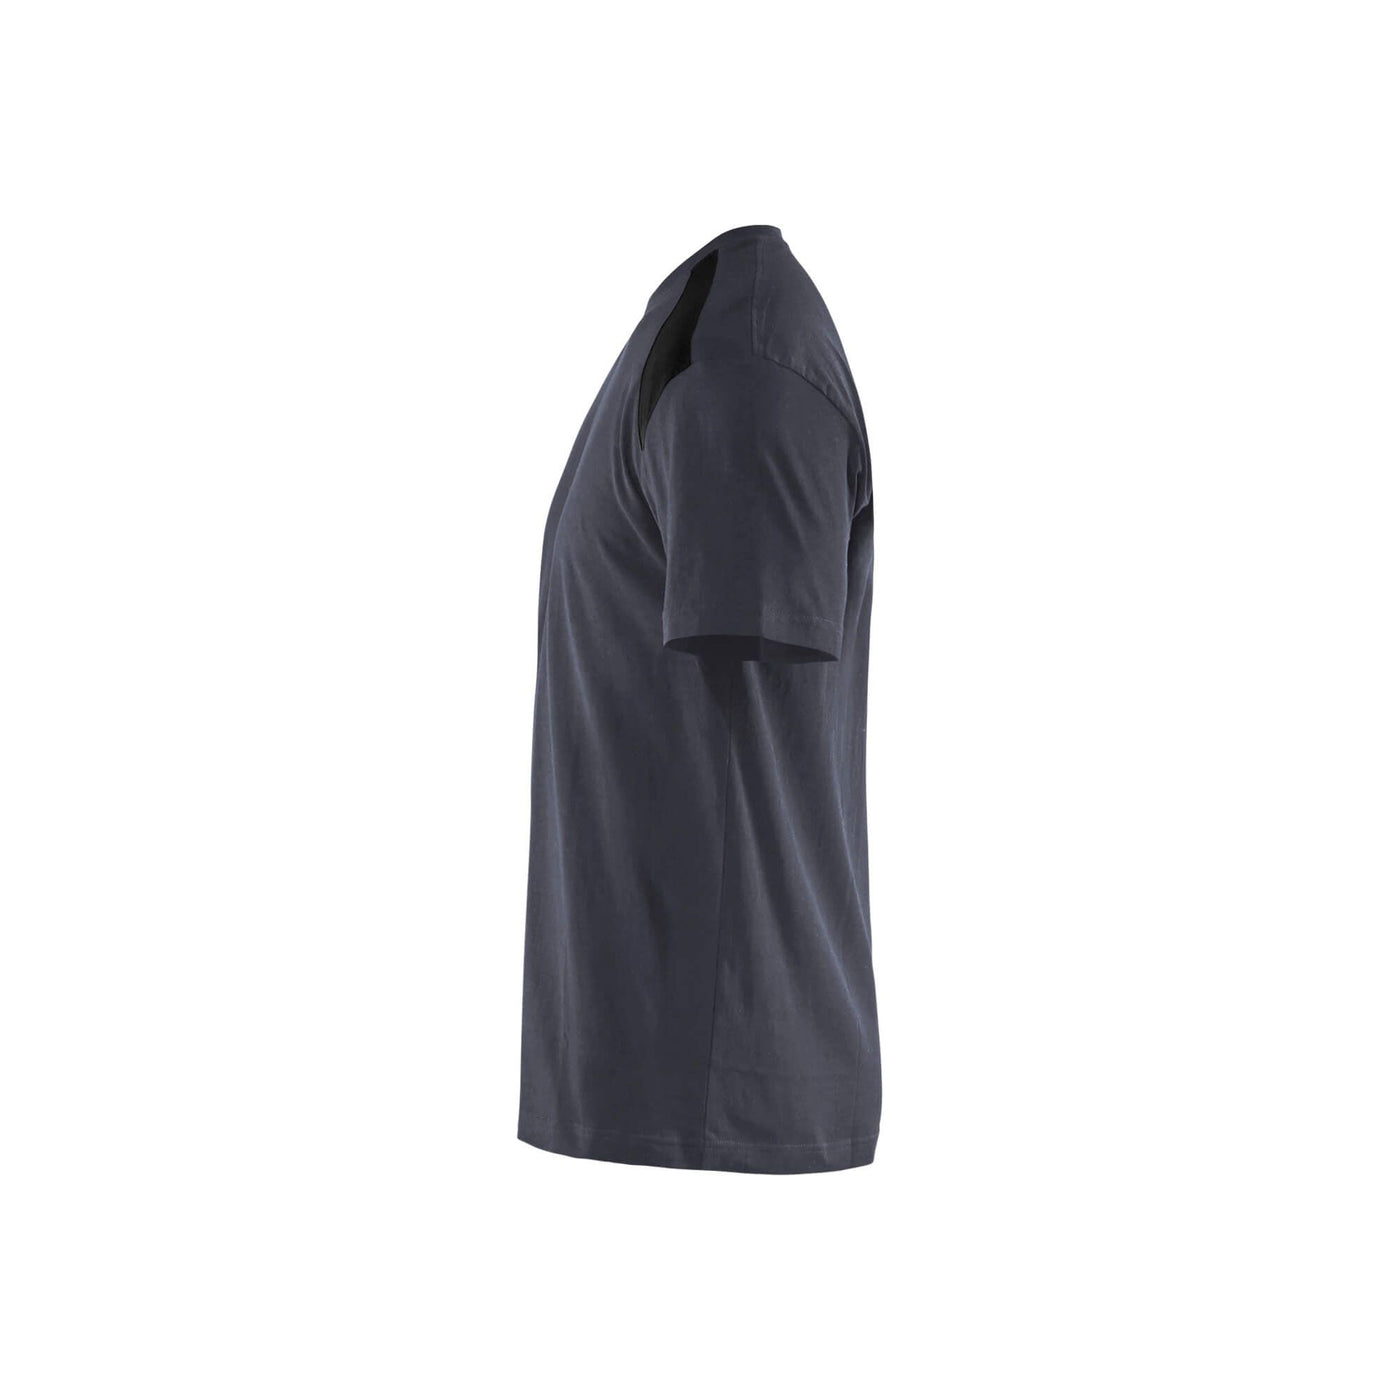 Blaklader 33791042 T-Shirt 2-Tone Cotton Dark Grey/Black Left #colour_dark-grey-black